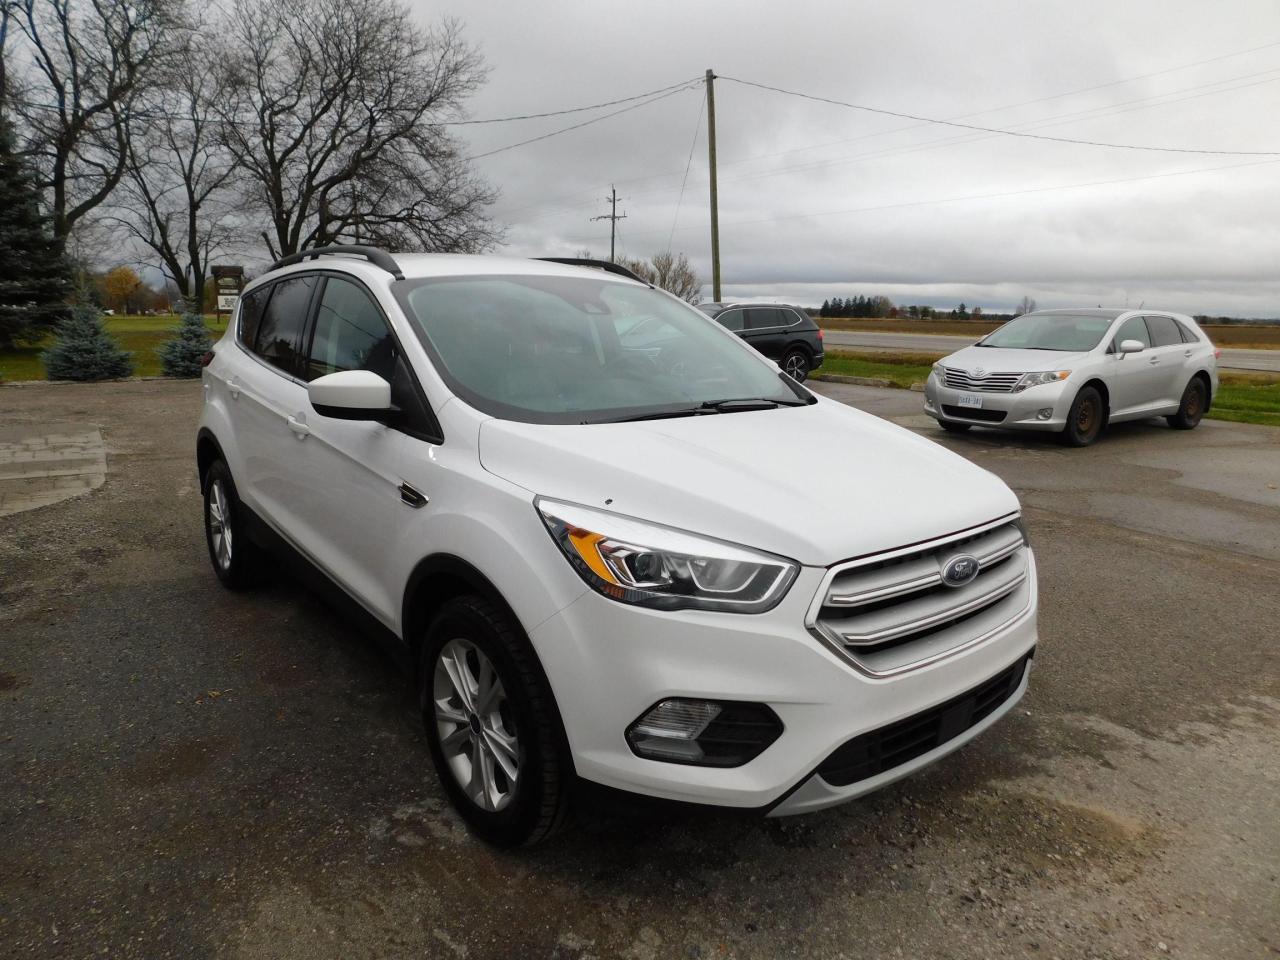 2019 Ford Escape SEL | 4WD | Backup Camera | USB/AUX | - Photo #5